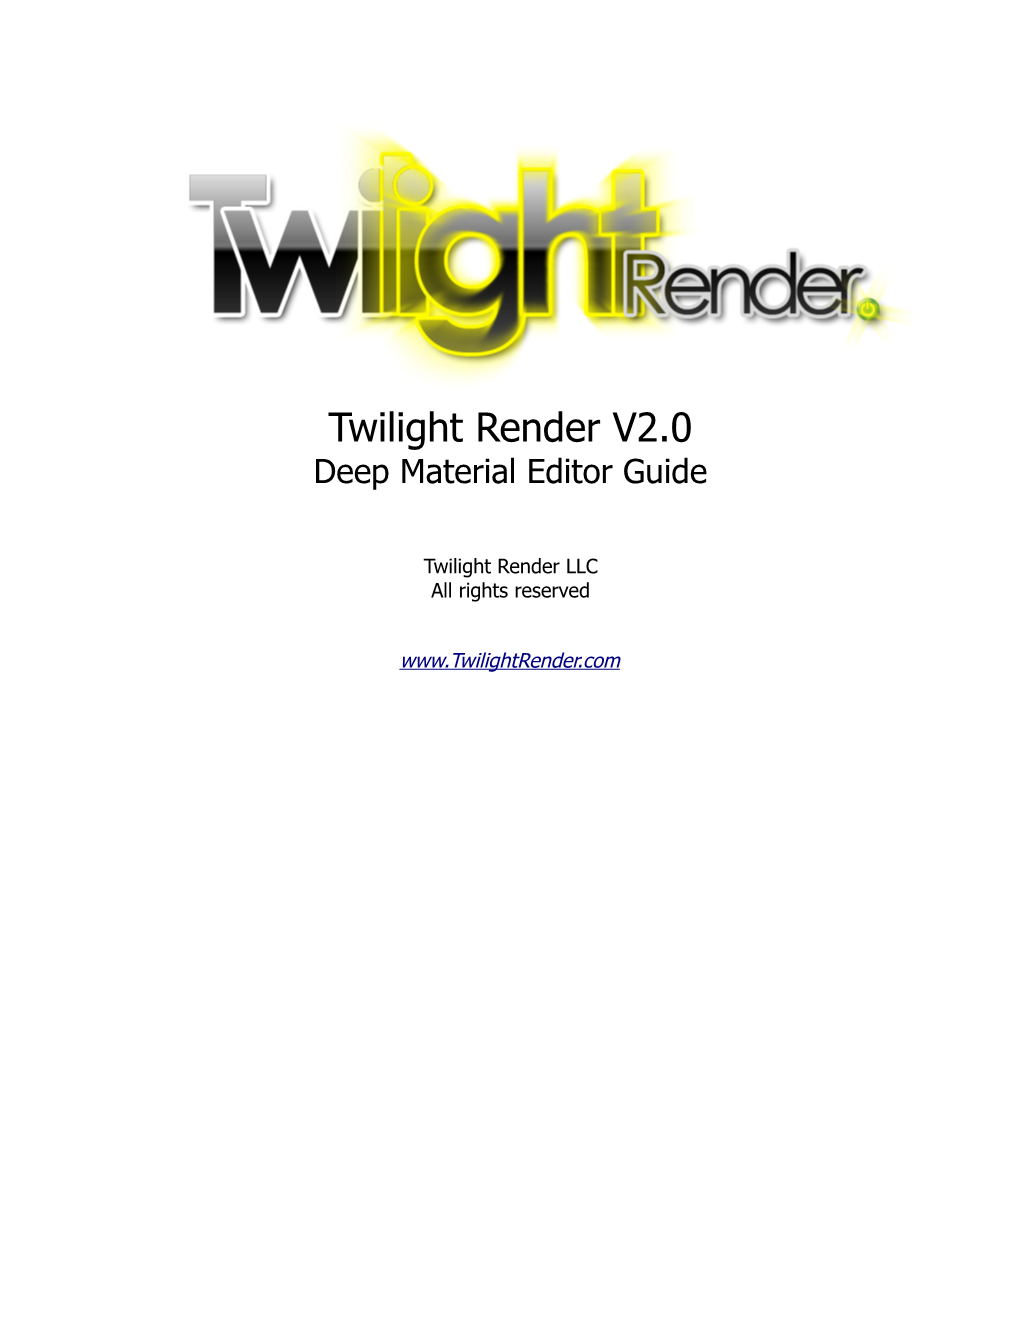 Deep Material Editor Guide